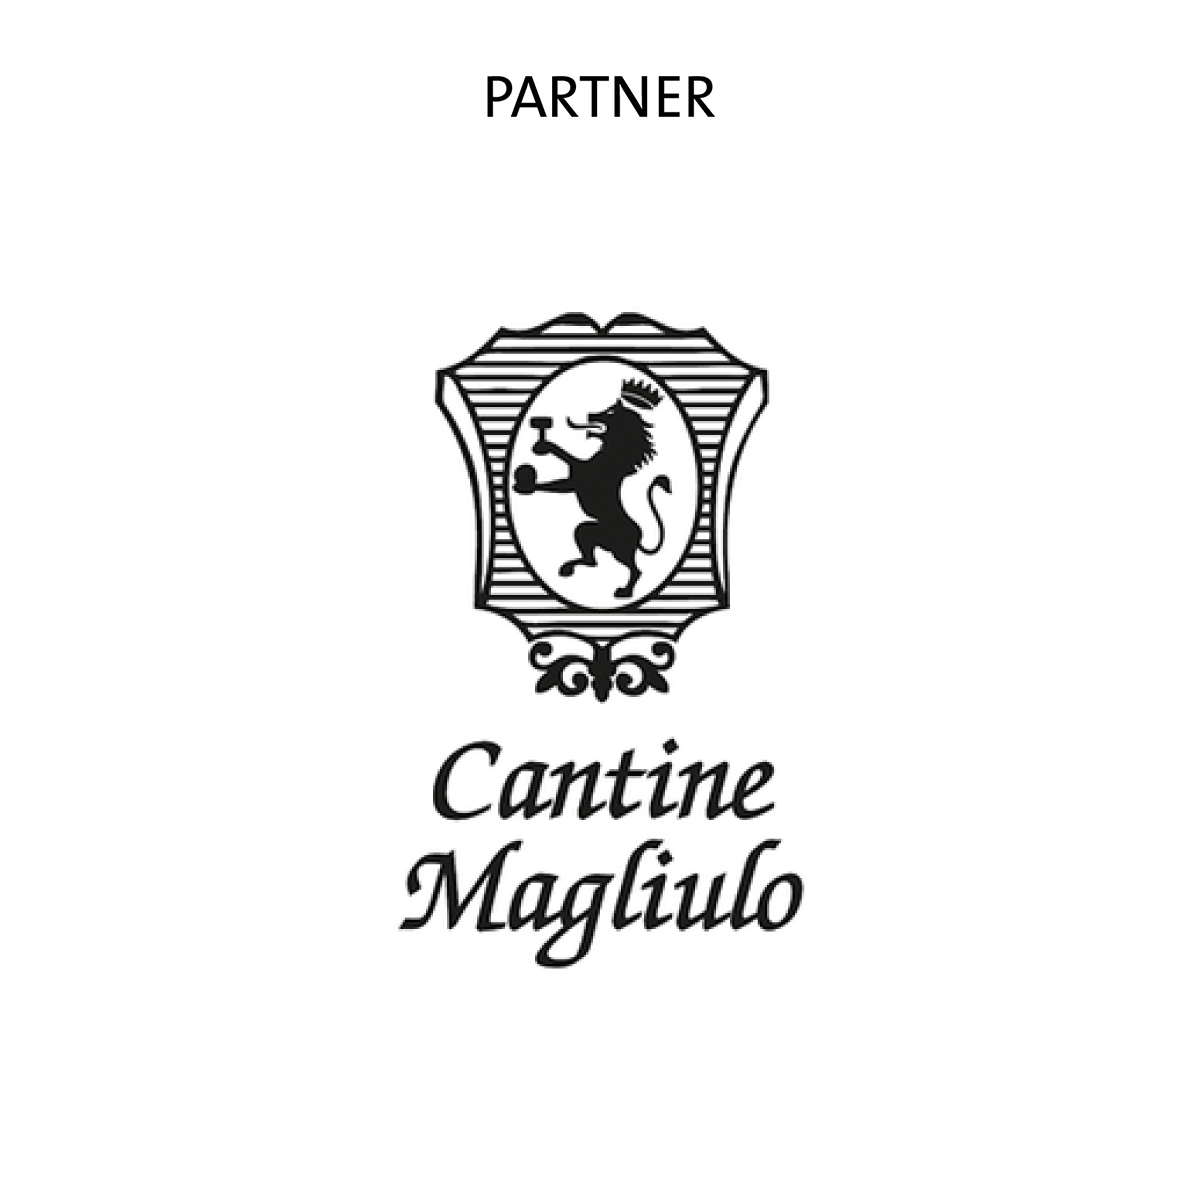 Cantine-Magliulo-Partner